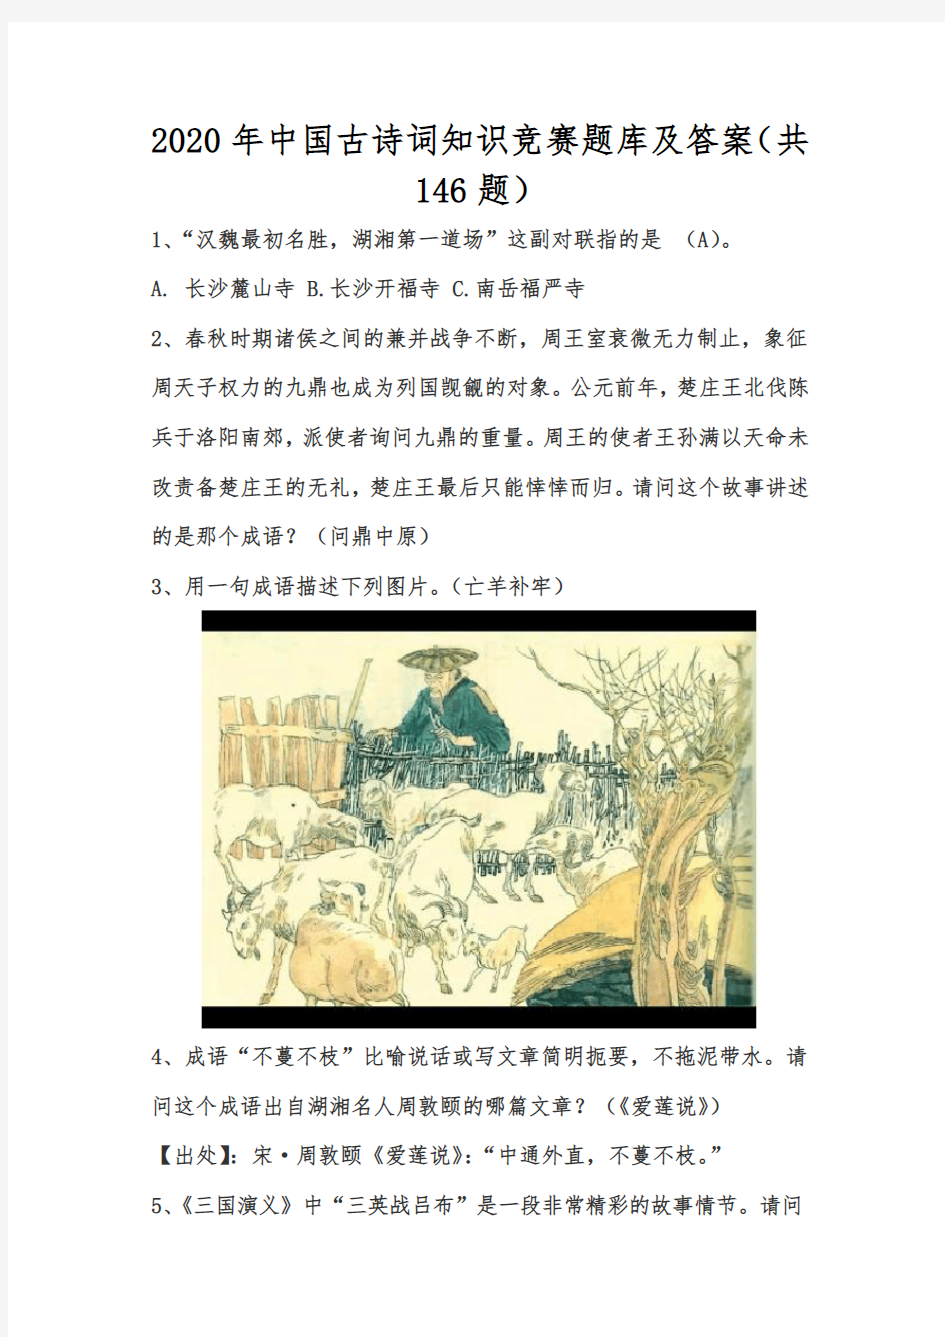 2020年中国古诗词知识竞赛题库及答案(共146题)